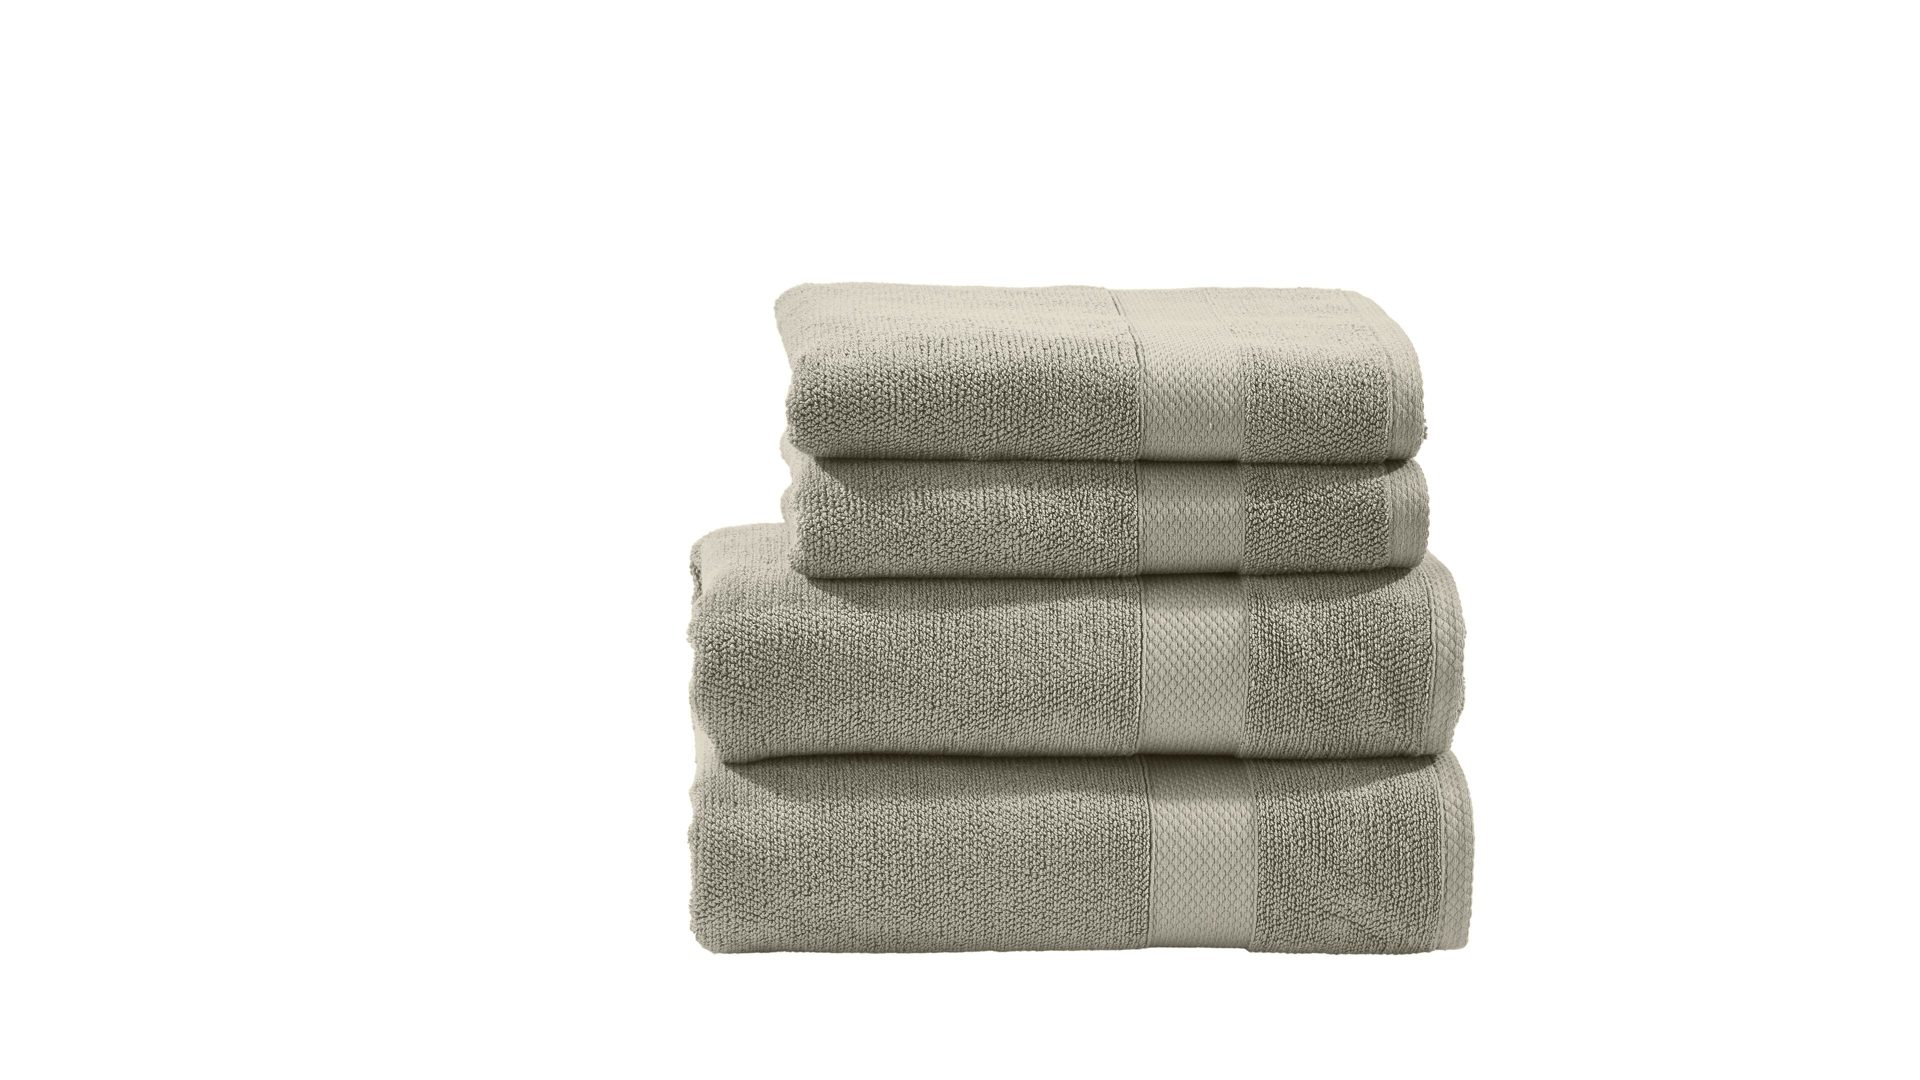 Handtuch-Set Done by karabel home company aus Stoff in Beige done Handtuch-Set Deluxe für Ihre Heimtextilien taupefarbene Baumwolle – vierteilig